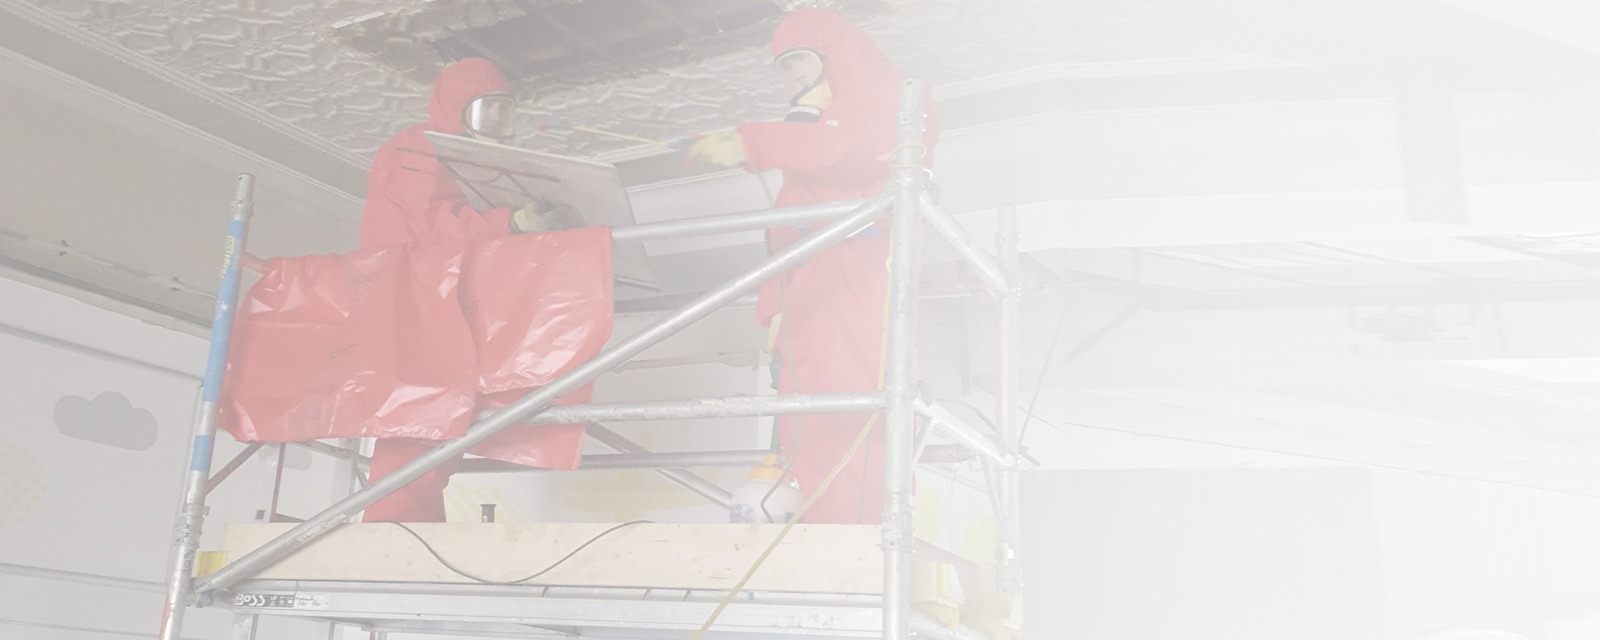 Asbestos artex ceiling removal